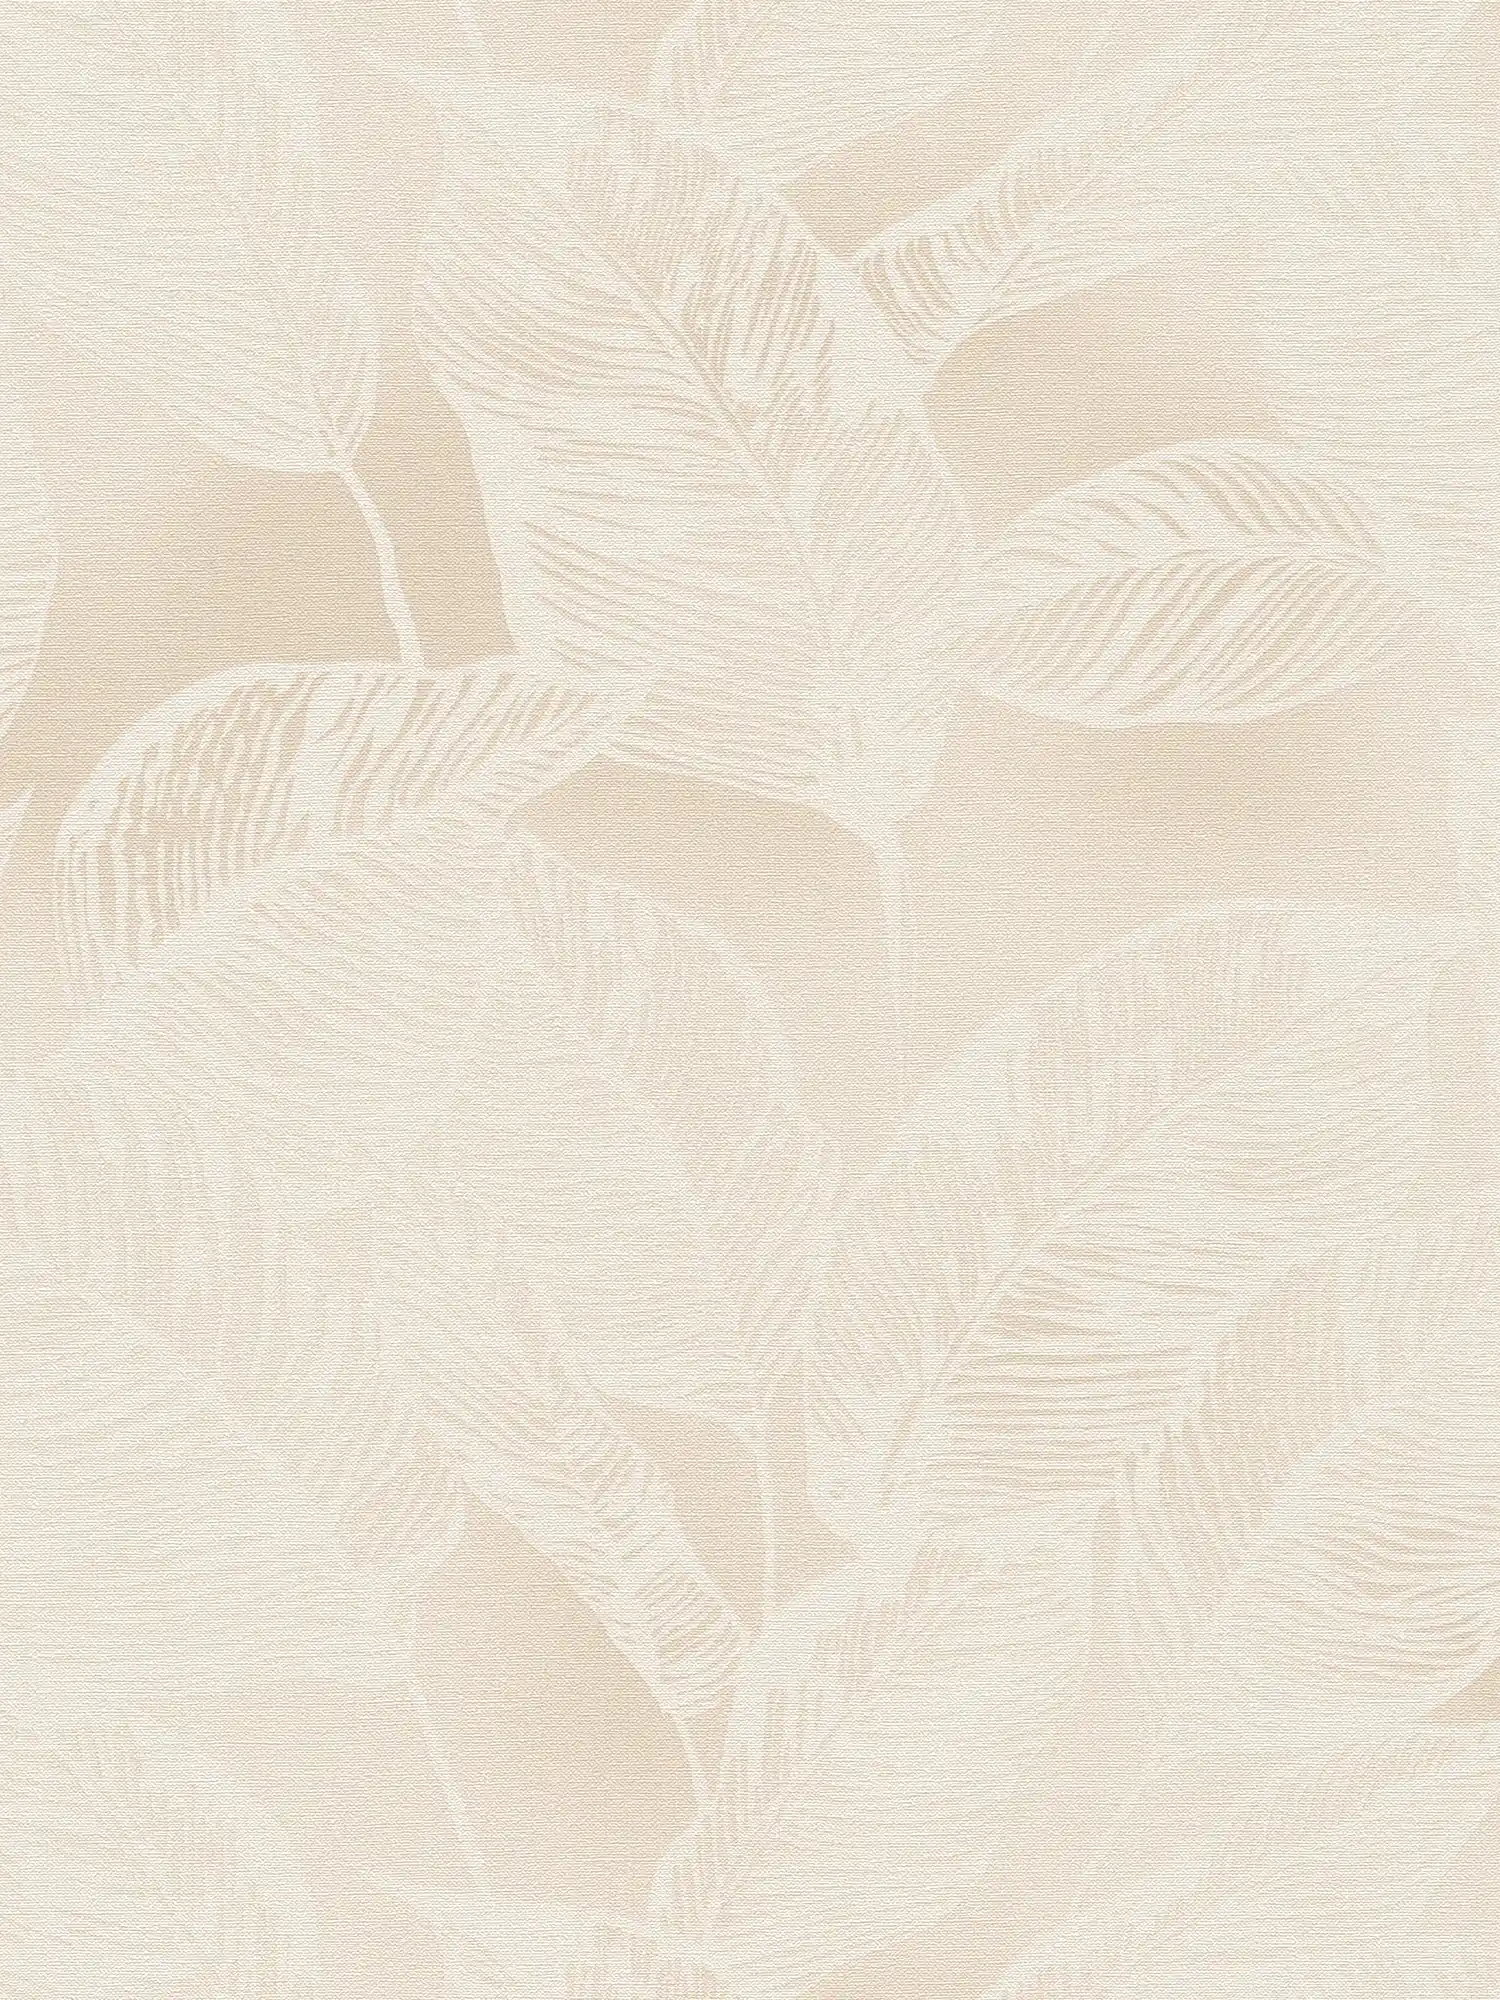 Carta da parati in tessuto non tessuto con motivo a foglie senza PVC - beige, bianco
